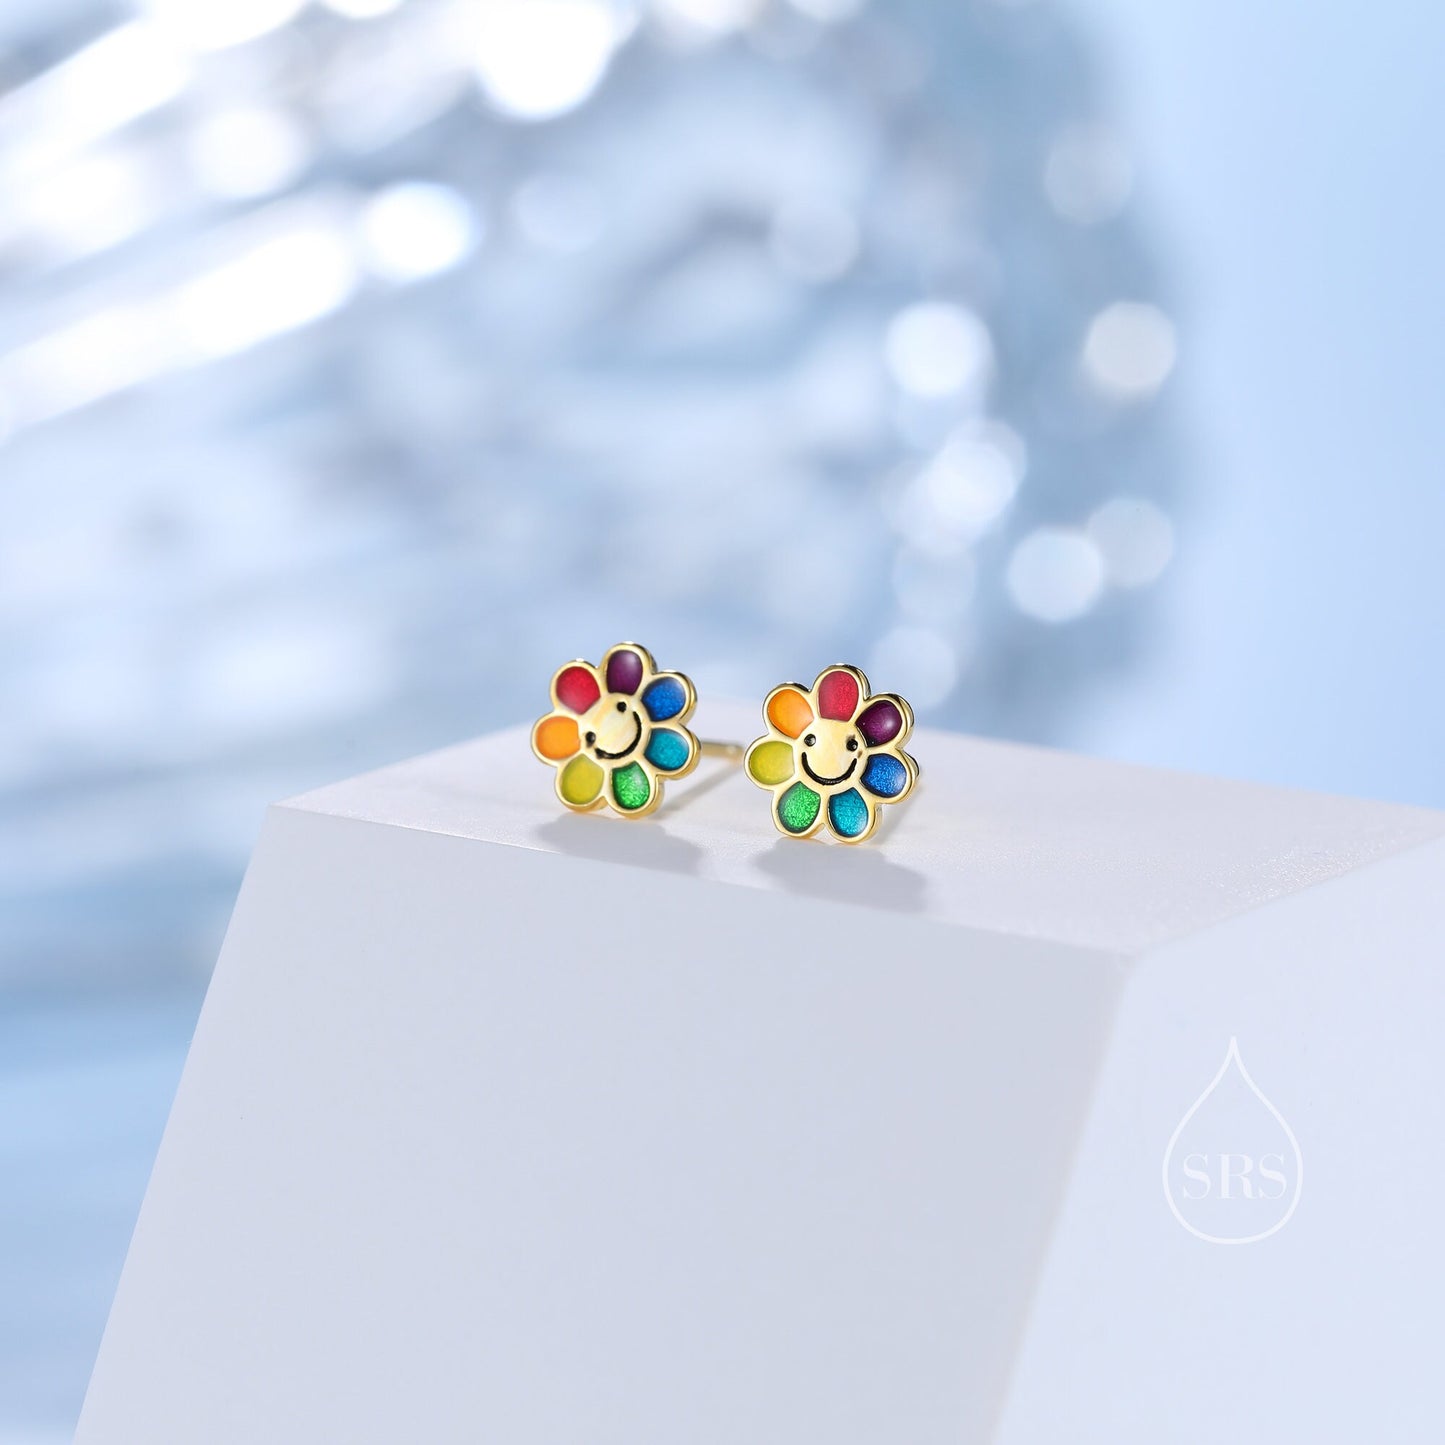 Enamel Smiling Flower Stud Earrings in Sterling Silver,  Silver Rainbow Flower Earrings, Multi Colour Flower Stud in Sterling Silver